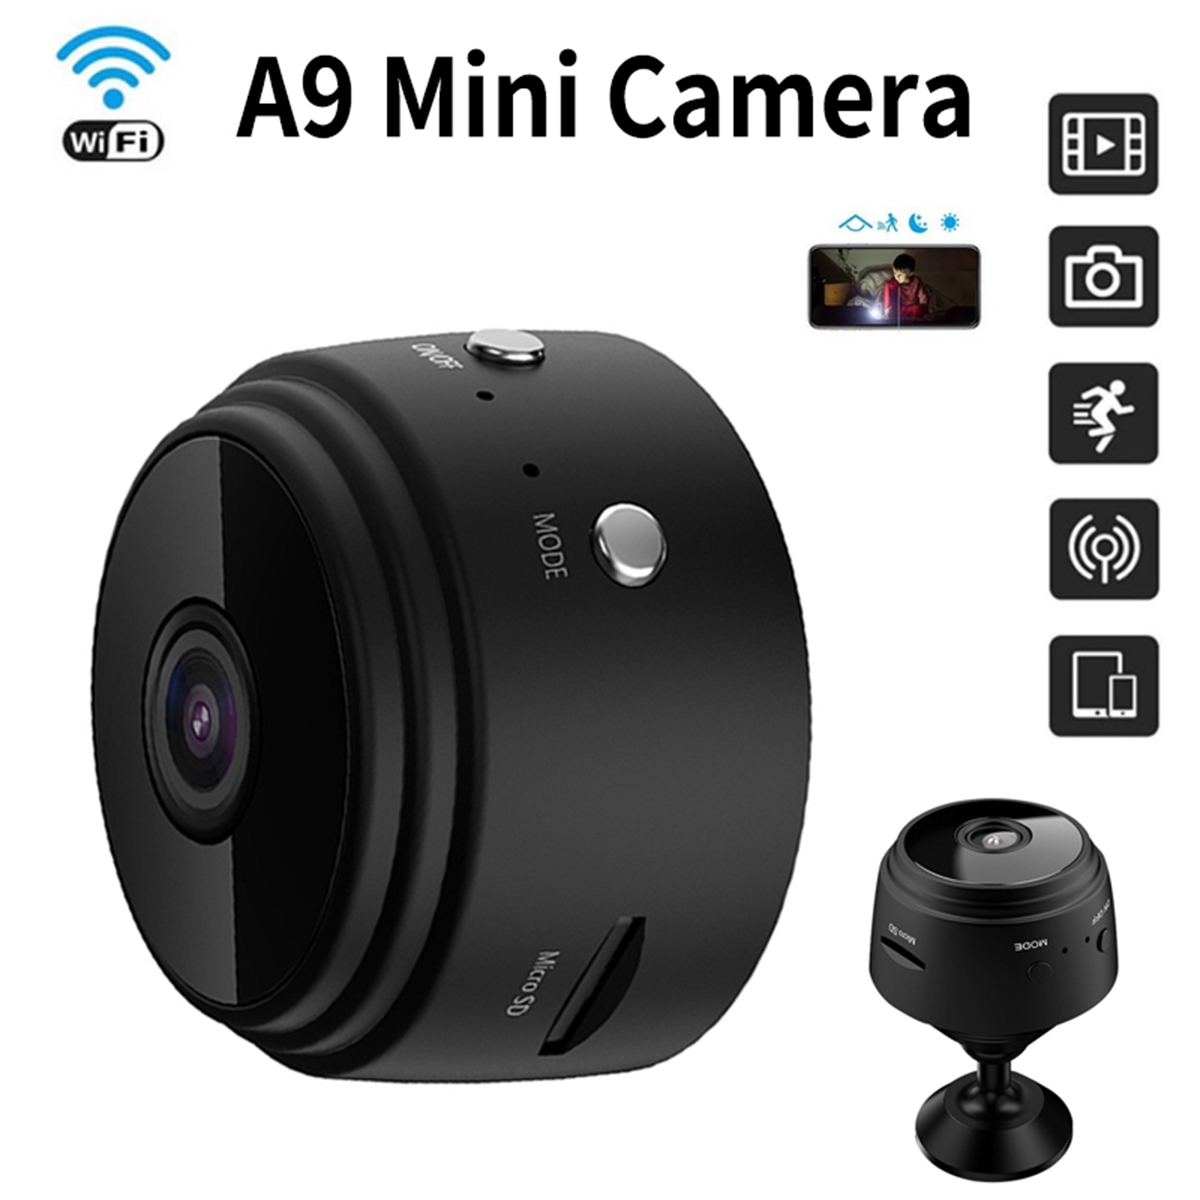 Camera Mini Wifi Không Dây A9 Hd 1080P Nhỏ Gọn Tiện Lợi